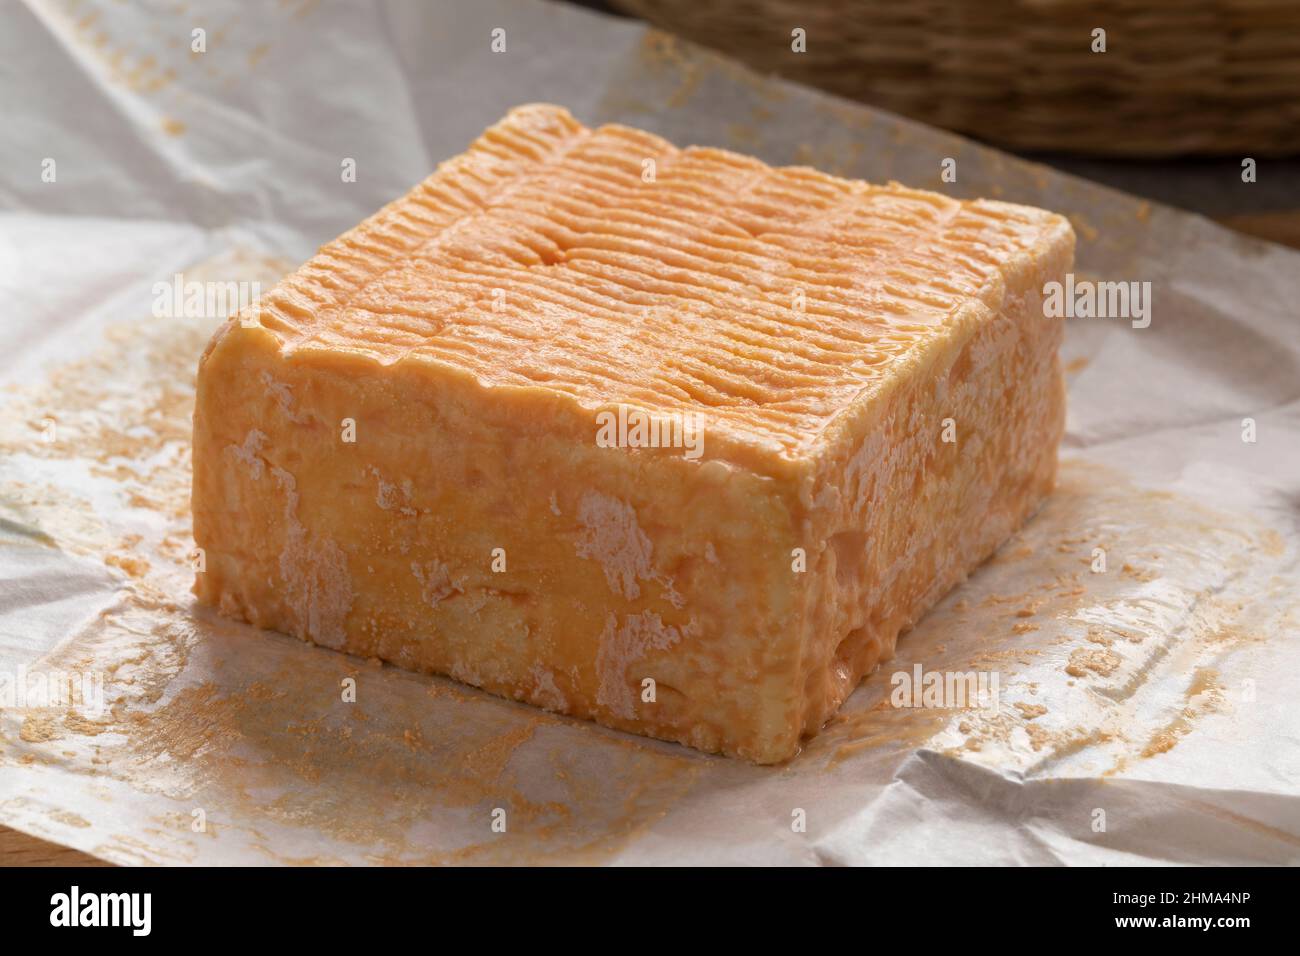 Una sola pieza entera de queso Limburger o Herve con un fuerte olor en el papel del paquete Foto de stock